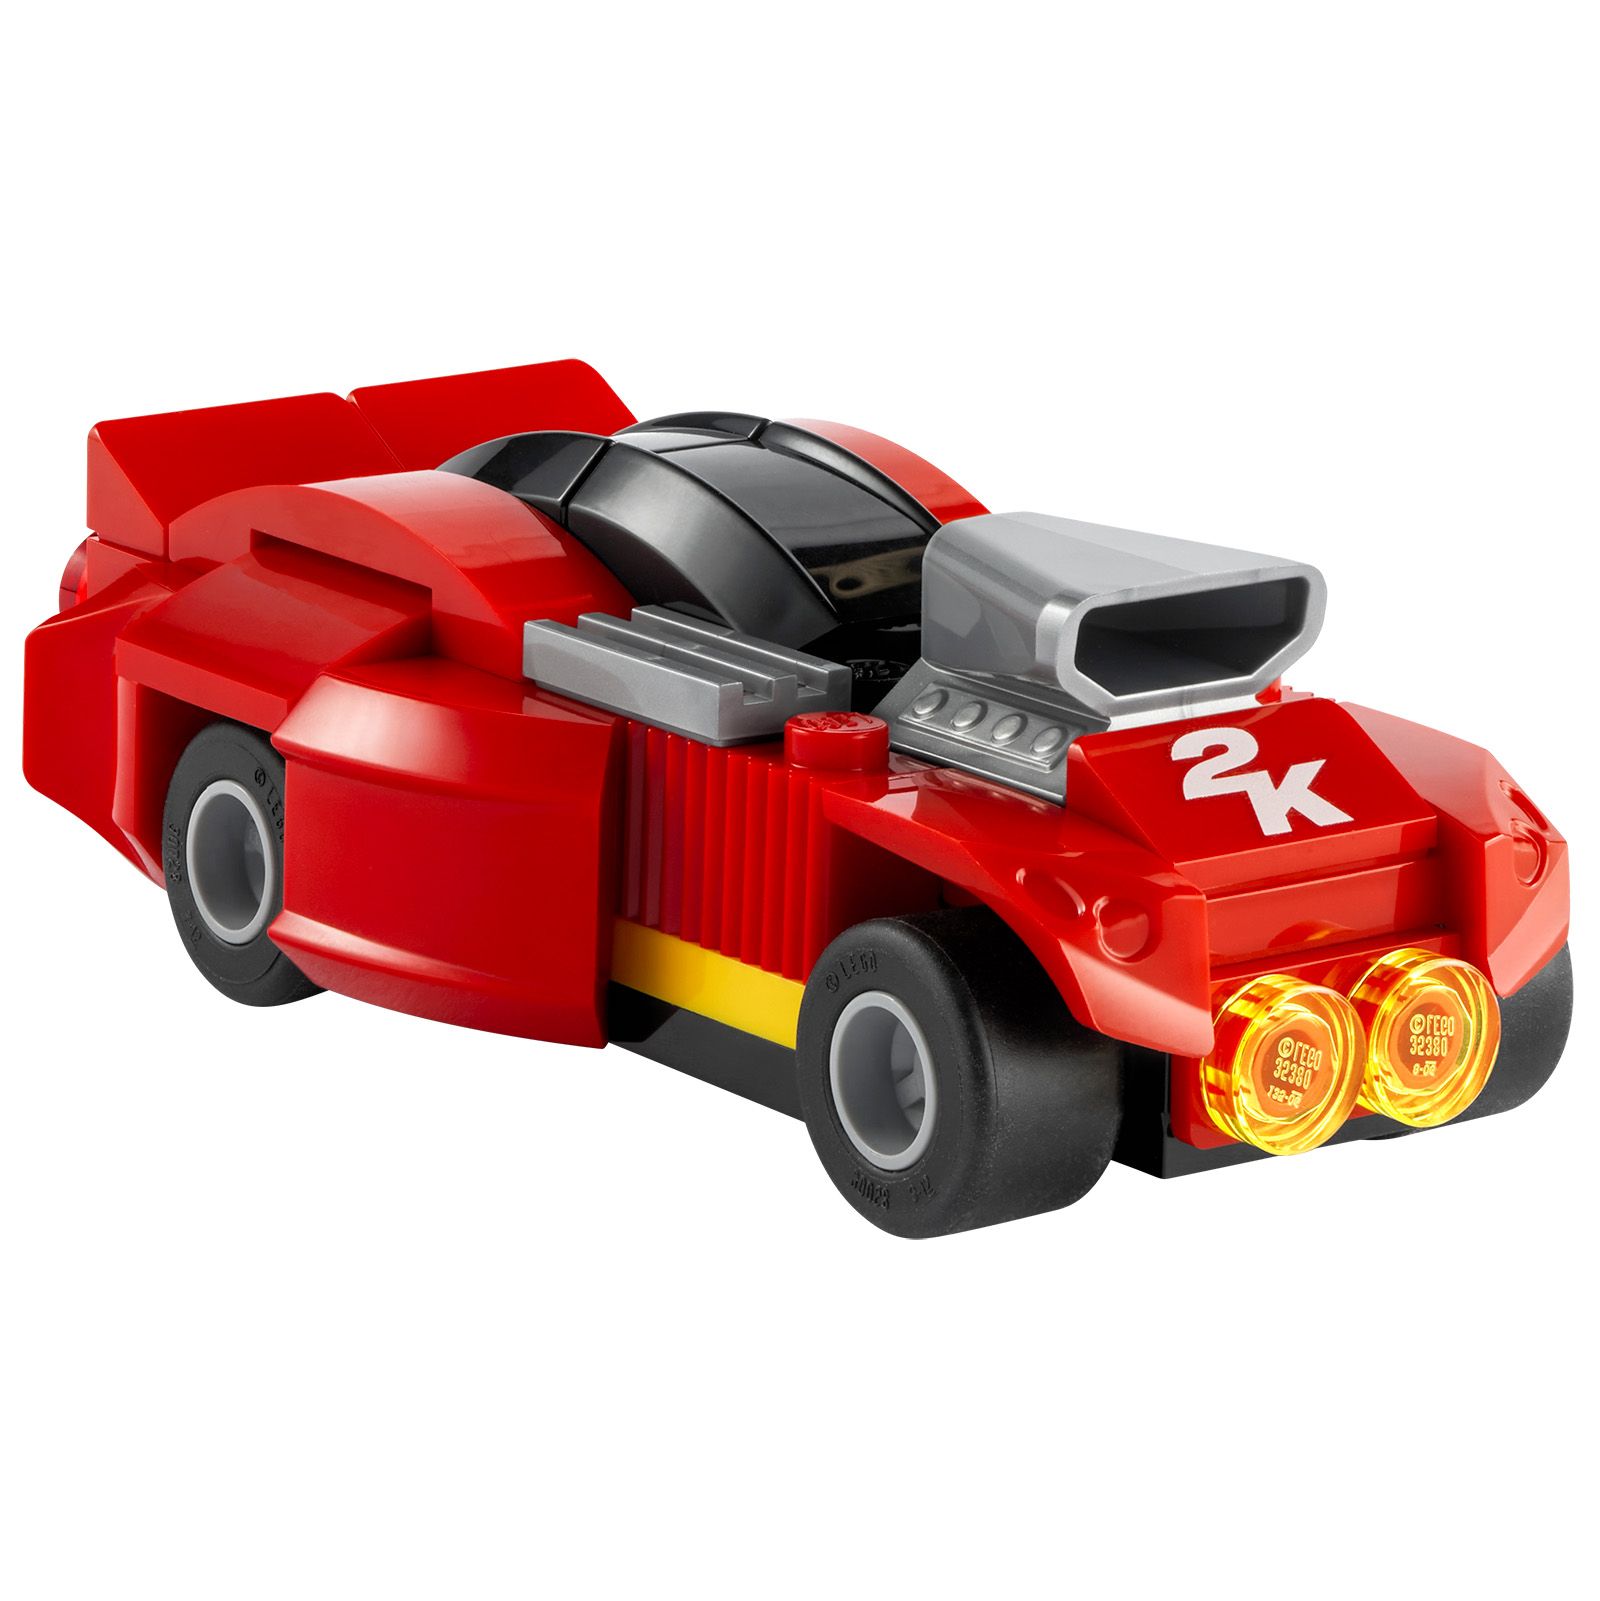 LEGO 2K Drive: leantóir agus táirge LEGO a thairgtear le leaganacha fisiceacha áirithe den chluiche físeáin